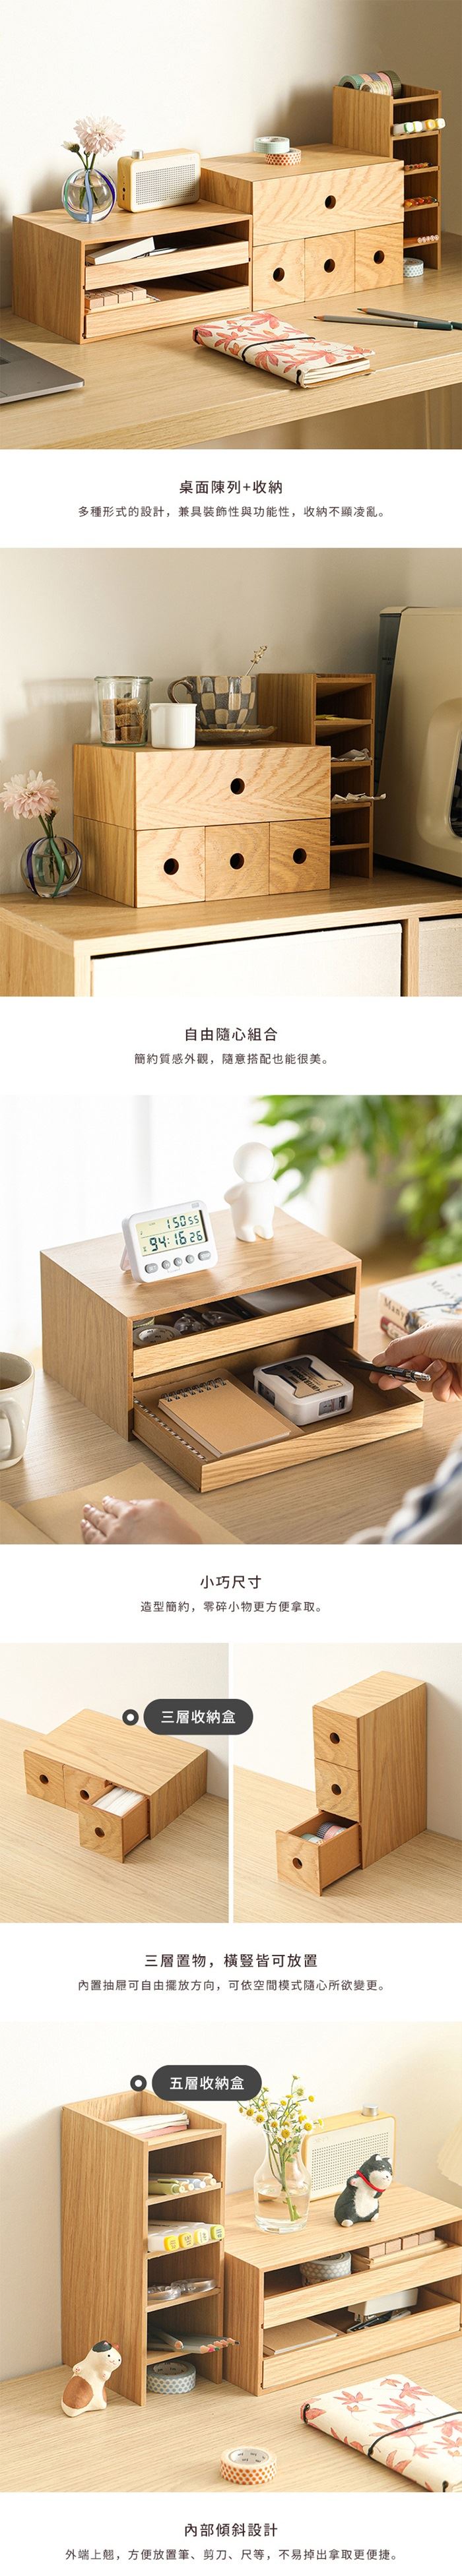 日本霜山】桌上用木質三層抽屜收納櫃| 7-11 i預購購物